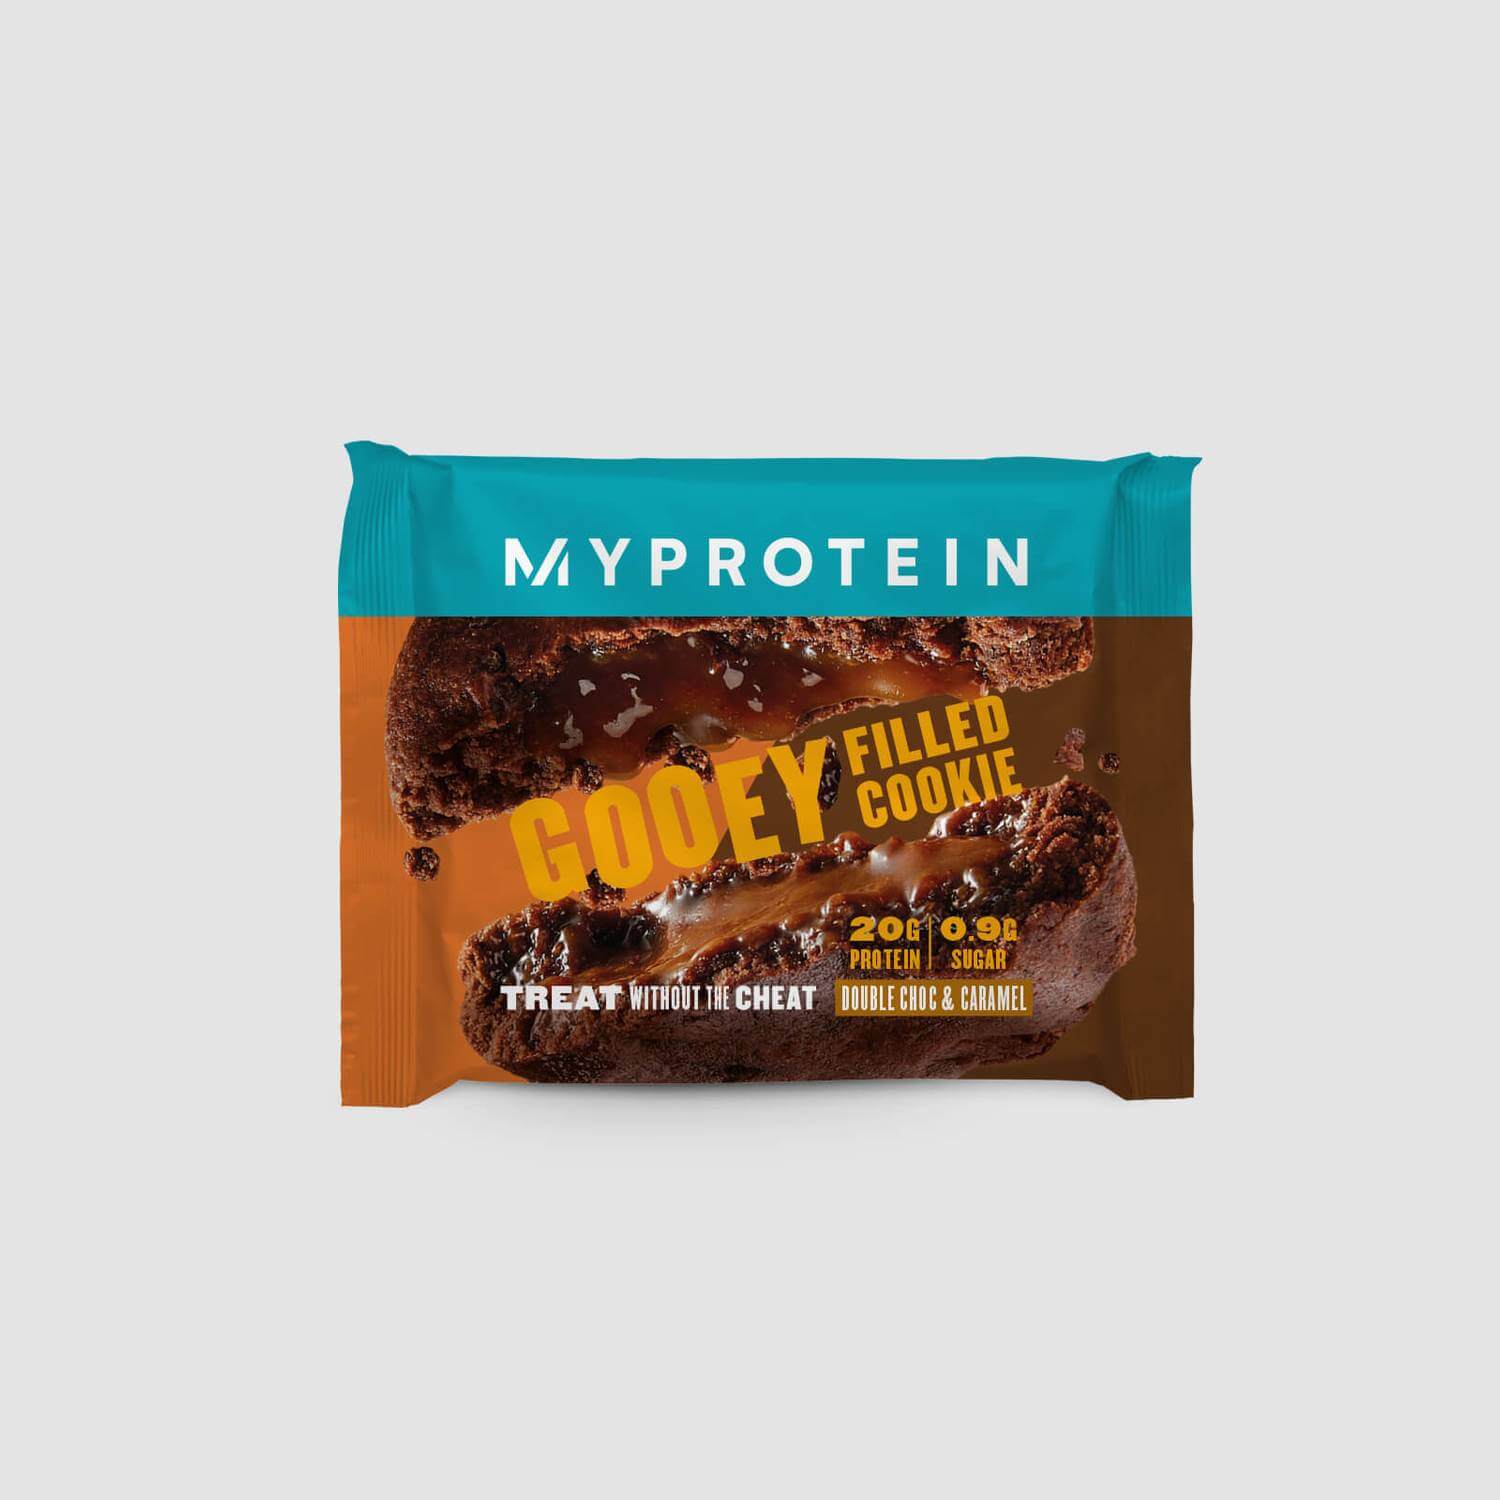 Myprotein Protein Filled Cookie (Sample) (AU)